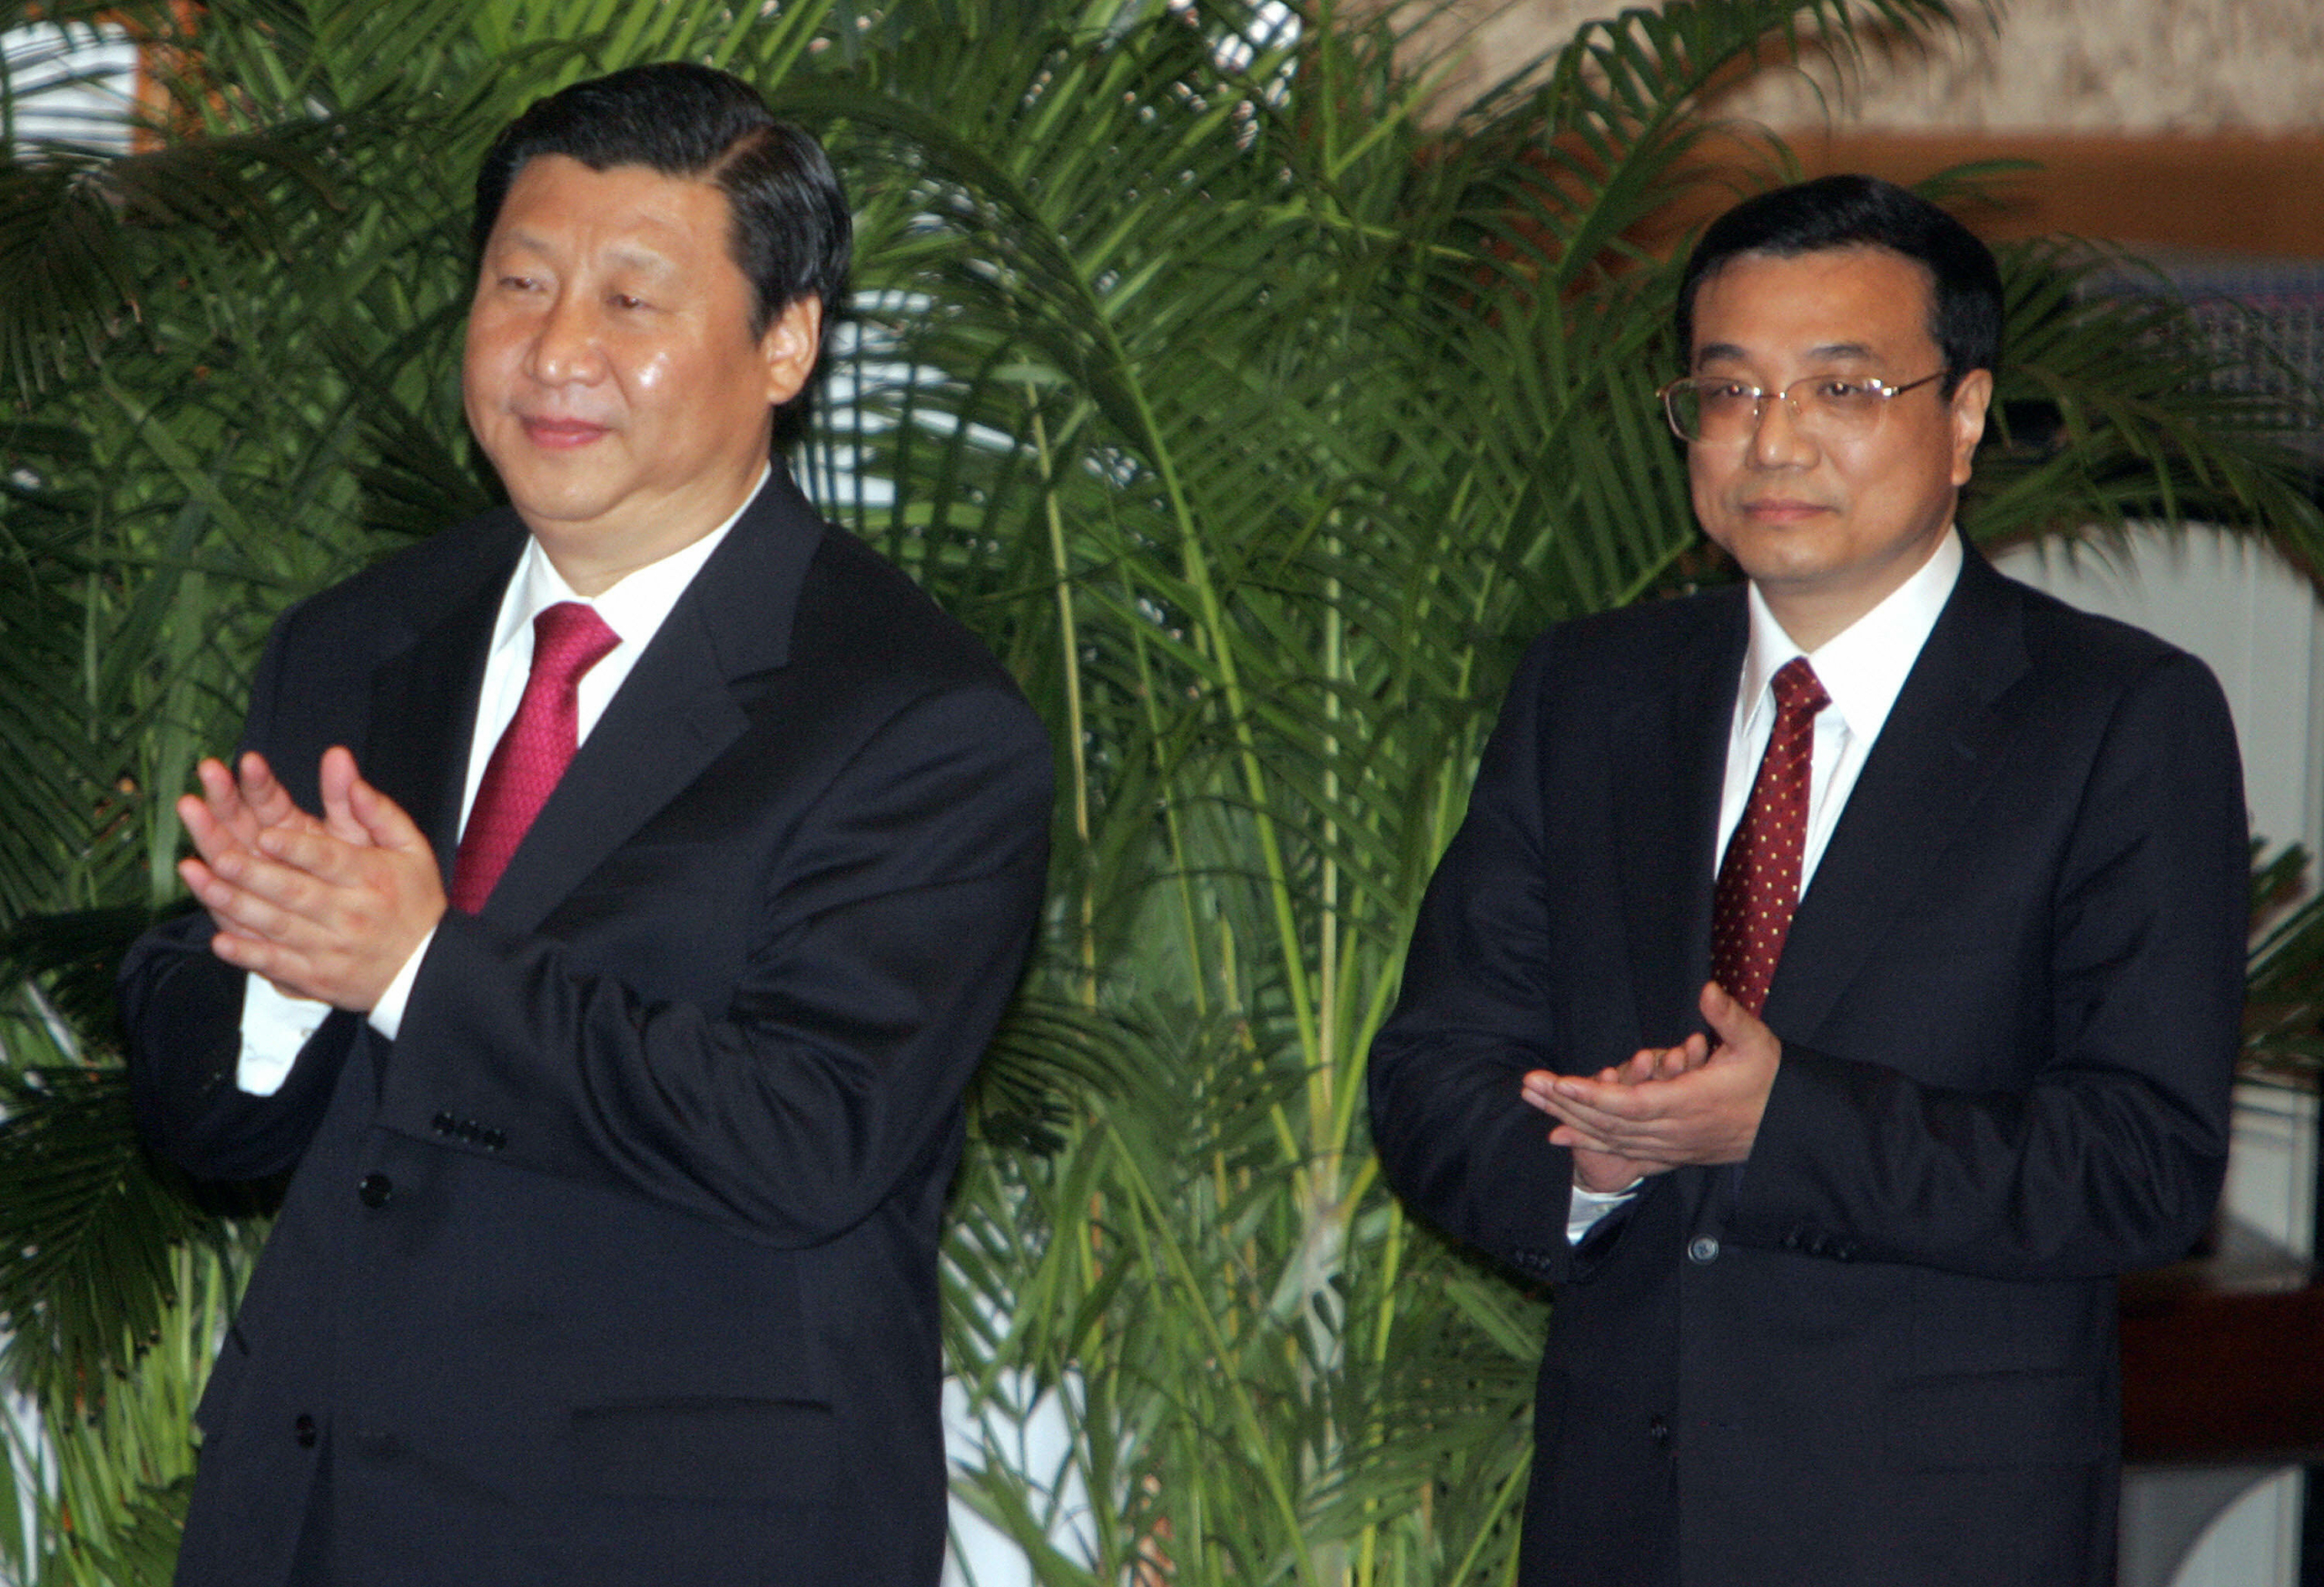 Ảnh chụp vào ngày 22/10/2007, ông Tập Cận Bình (trái) và ông Lý Khắc Cường (phải) đang chờ Chủ tịch Hồ Cẩm Đào giới thiệu tại một cuộc họp báo ở Đại lễ đường Nhân dân. (Ảnh: TEH ENG KOON/AFP/Getty Images)